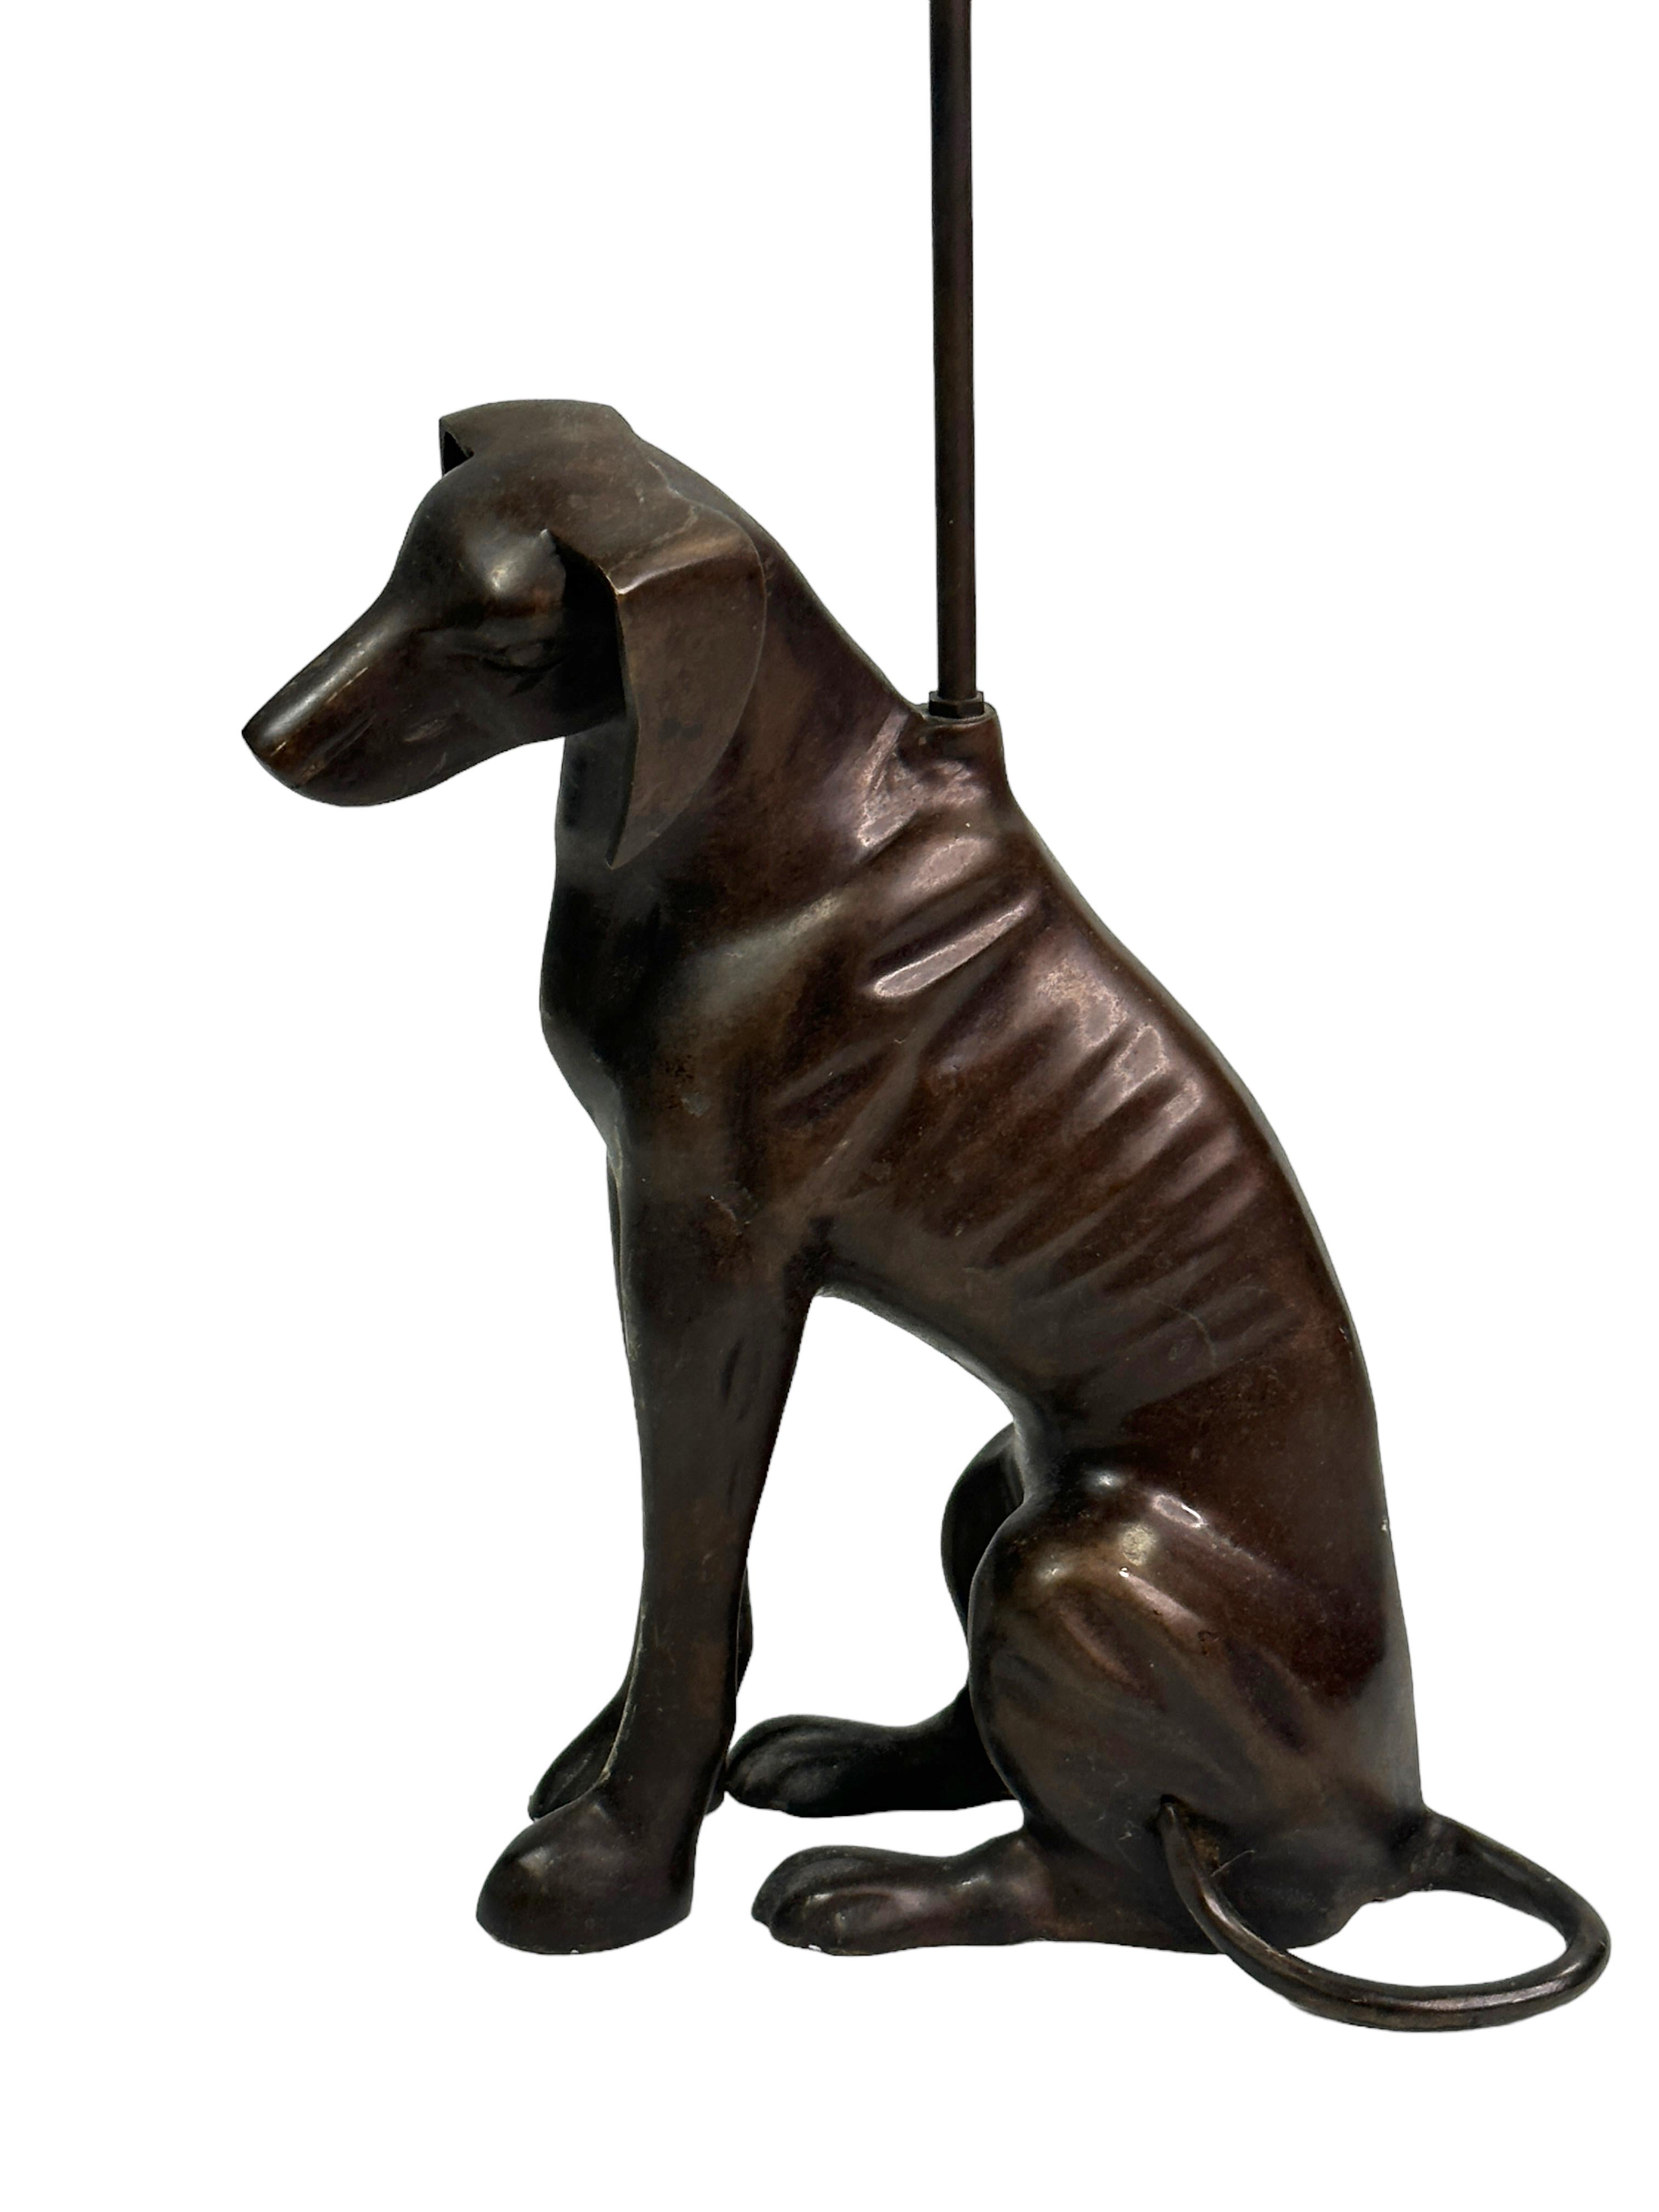 Une belle et substantielle sculpture de chien en bronze de style Art déco, de type whippet ou greyhound, mesurant au total 19.13